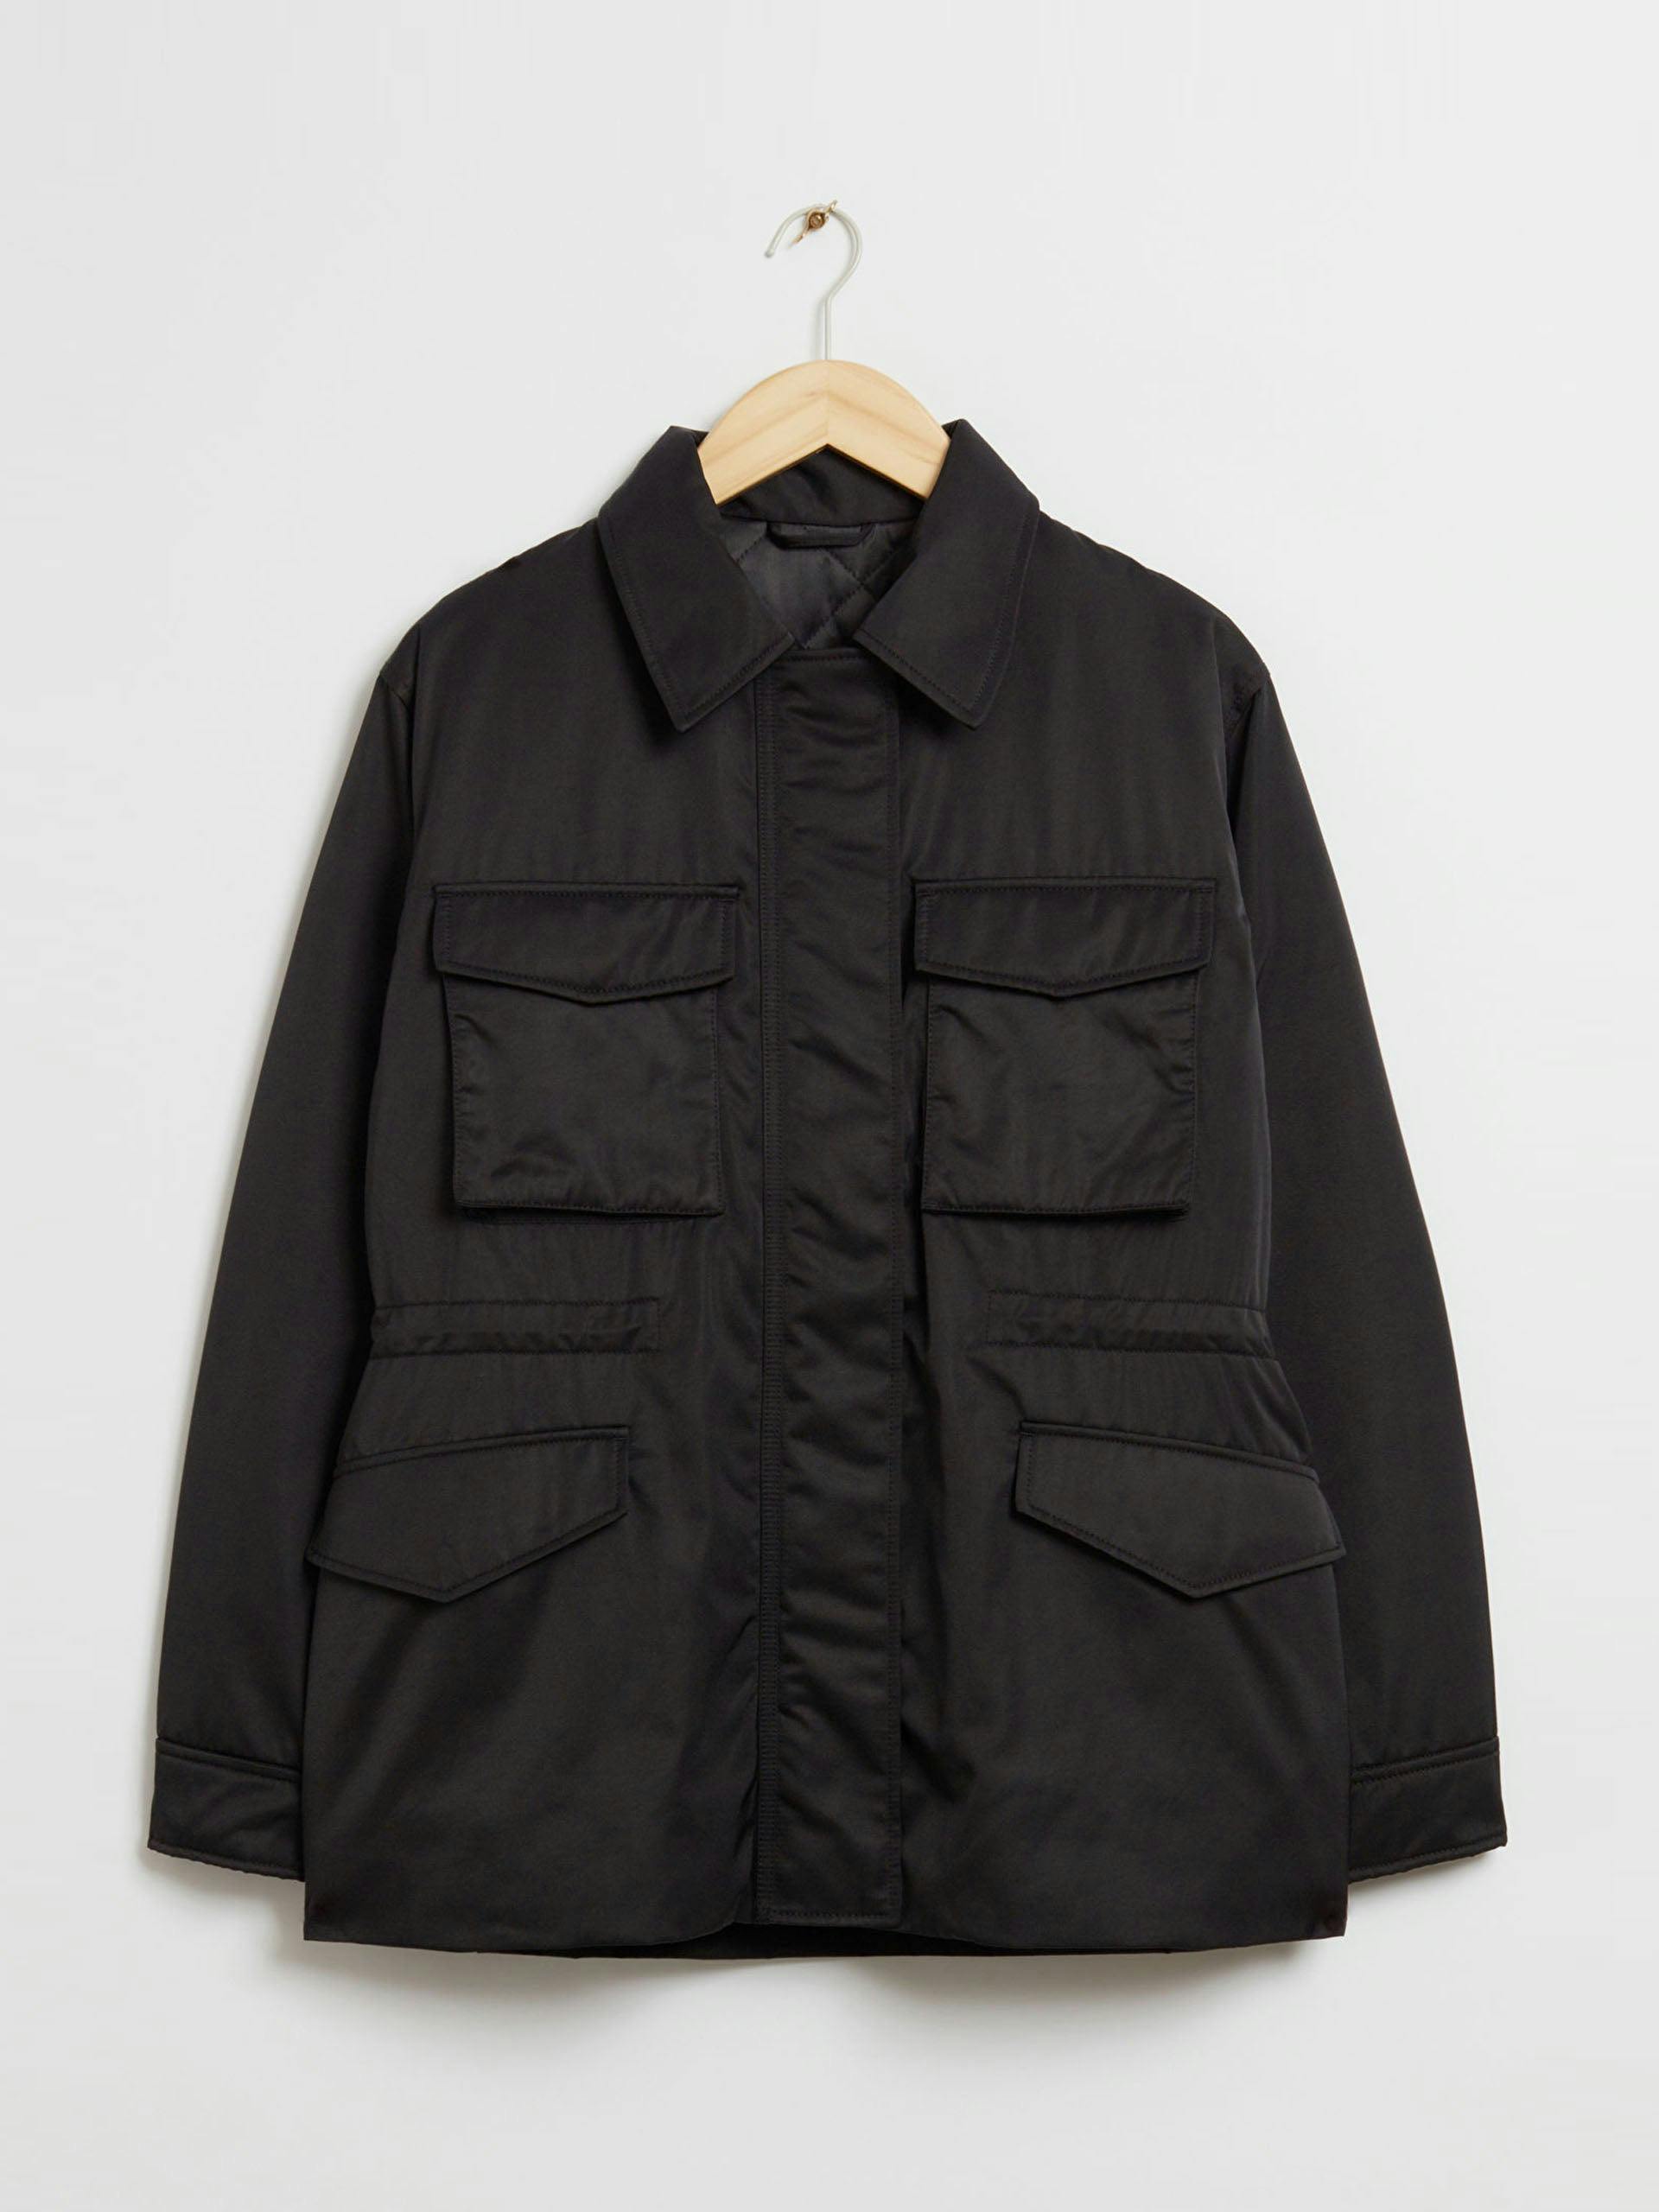 Drawstring collared jacket